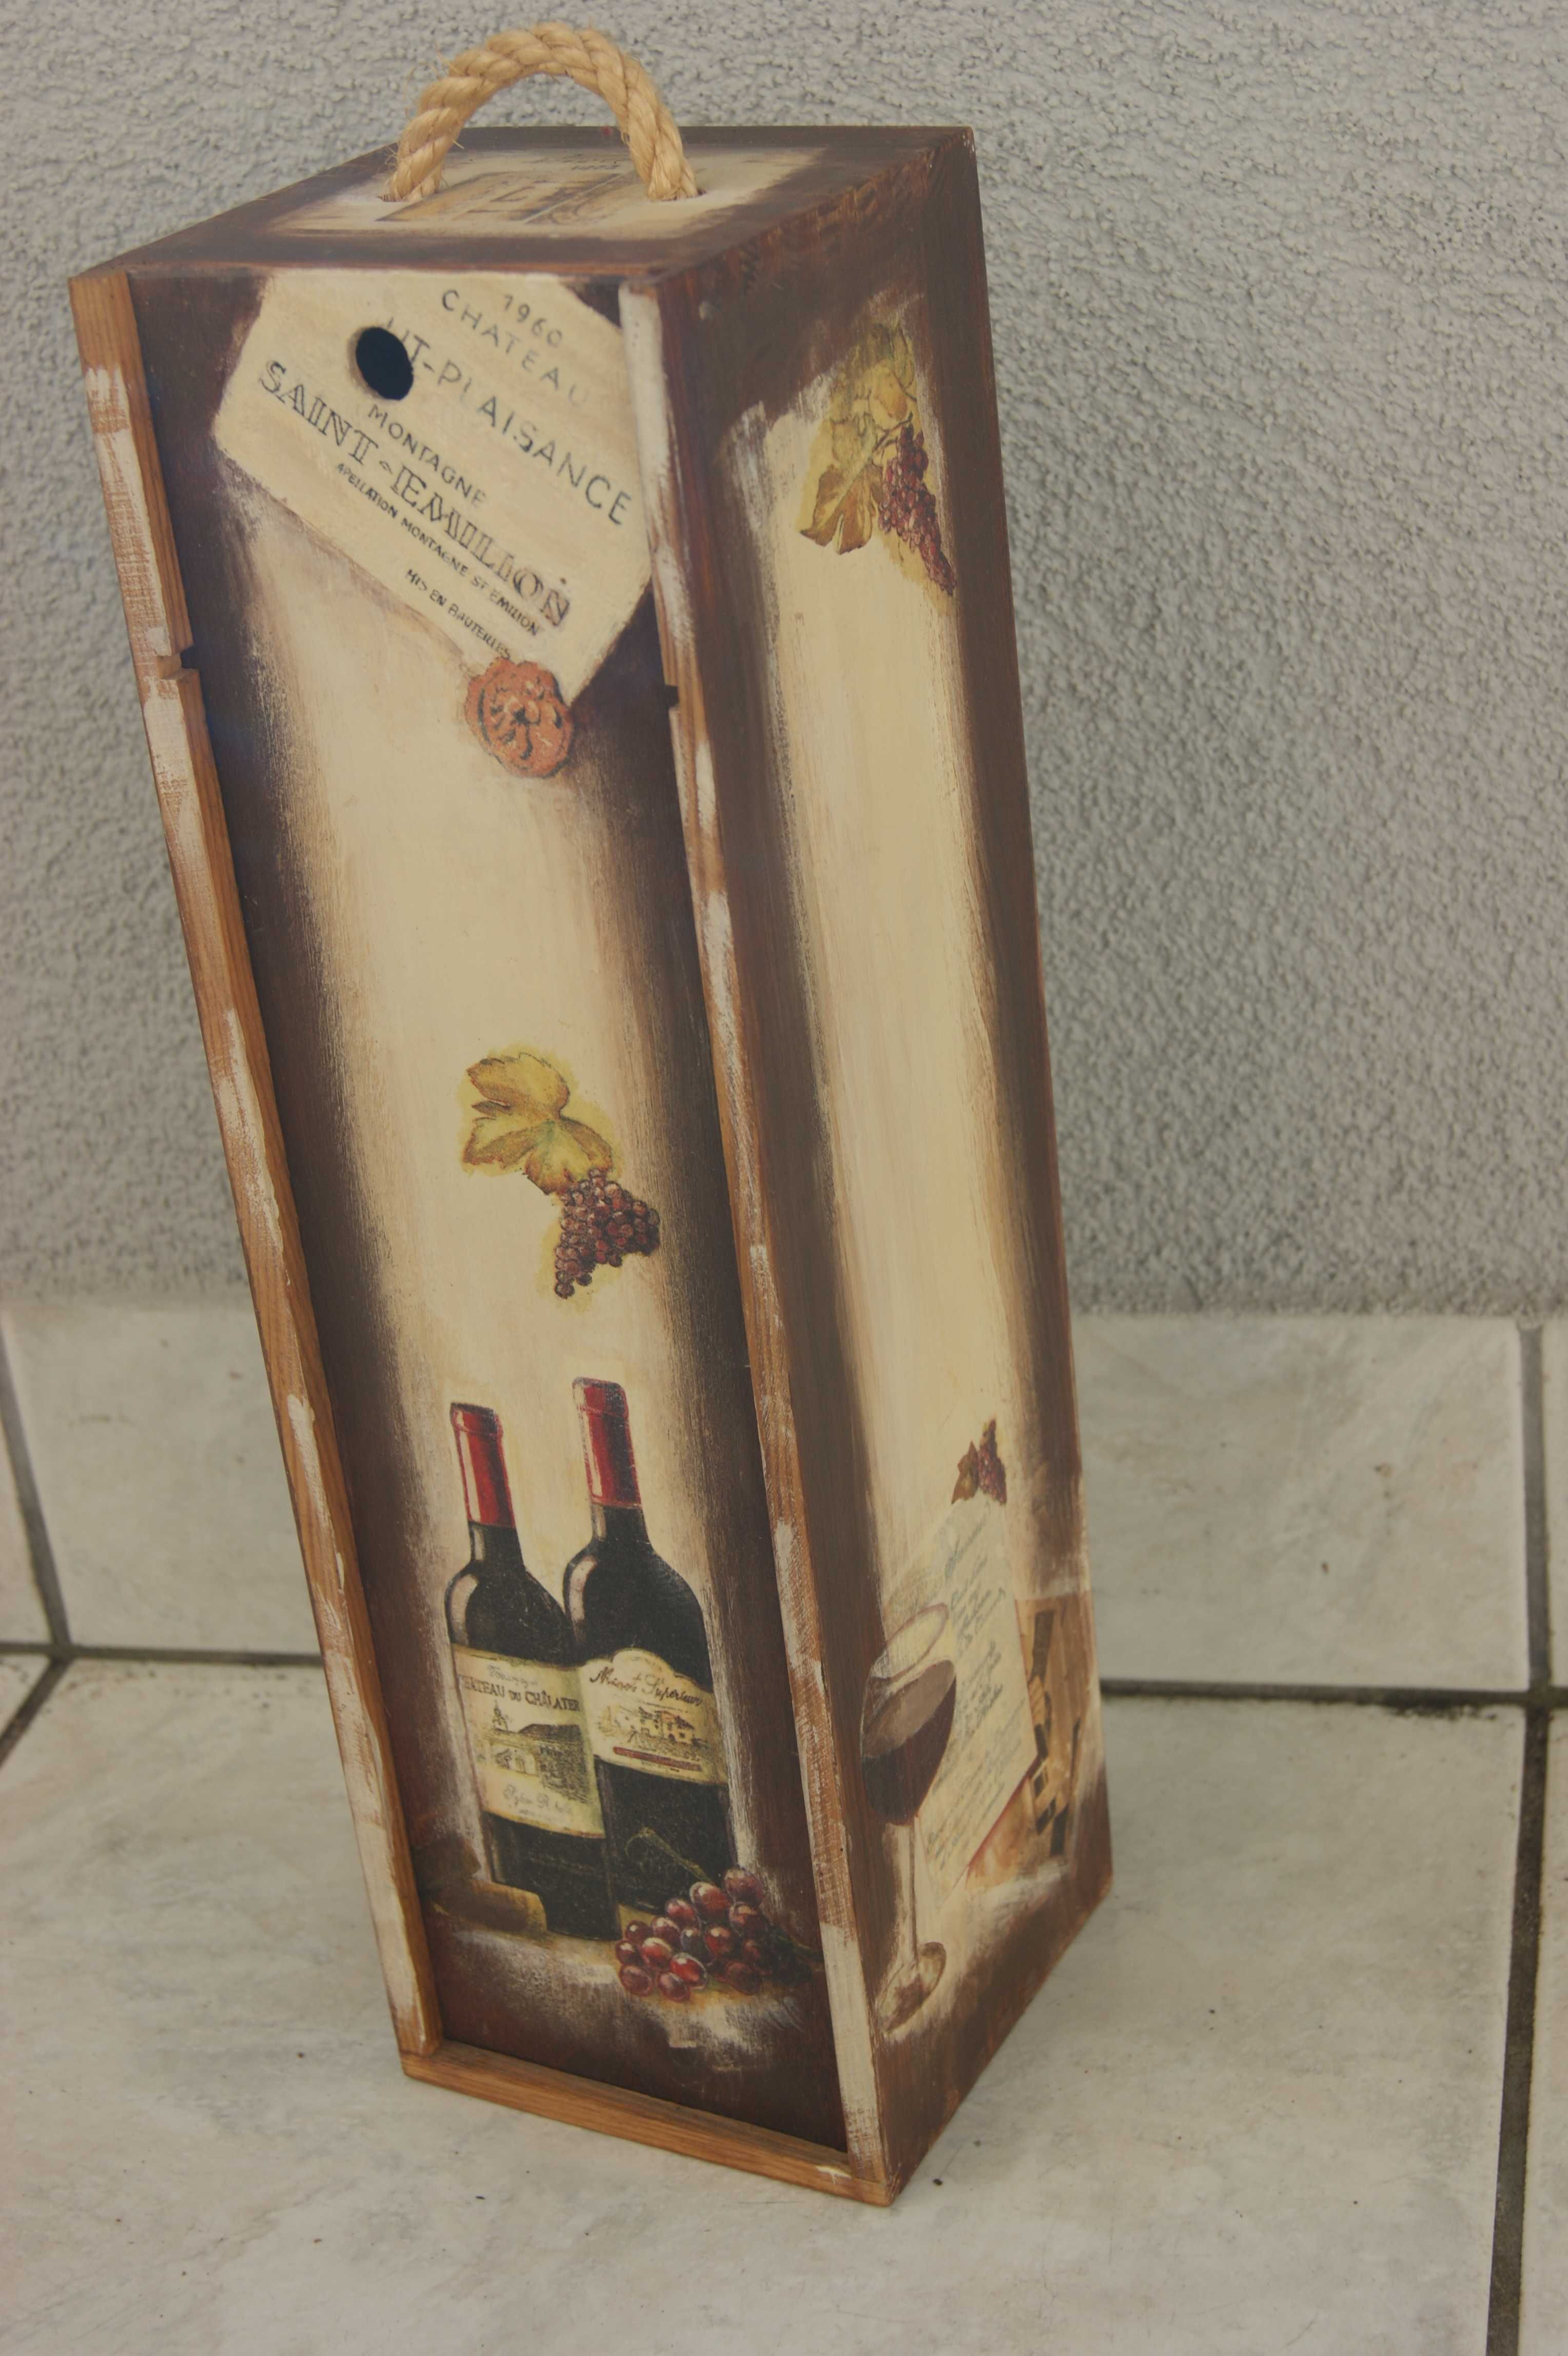 Rękodzieło-drewniana skrzynka na wino-34,5 cmx10cmx10cm